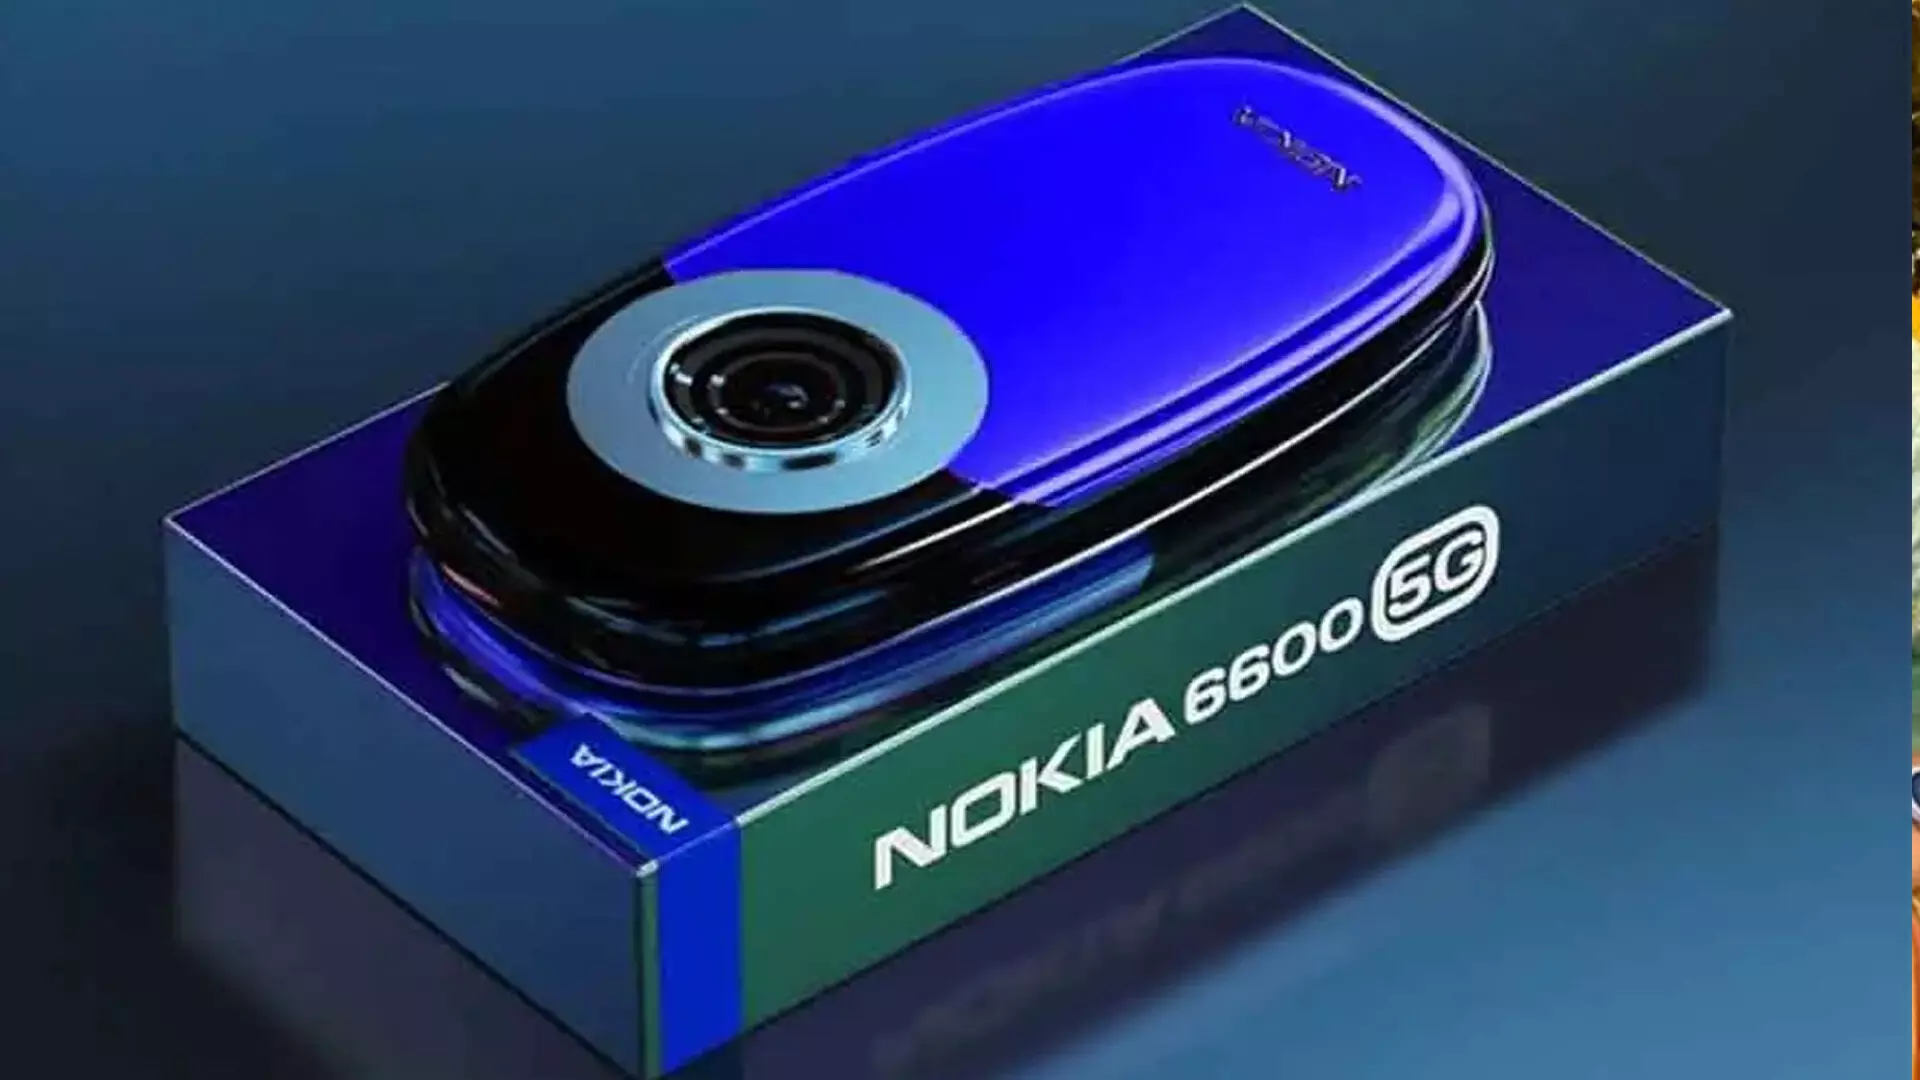 Nokia 6600 5G: मिल रही 12GB RAM, साथ में 108MP का कैमरा